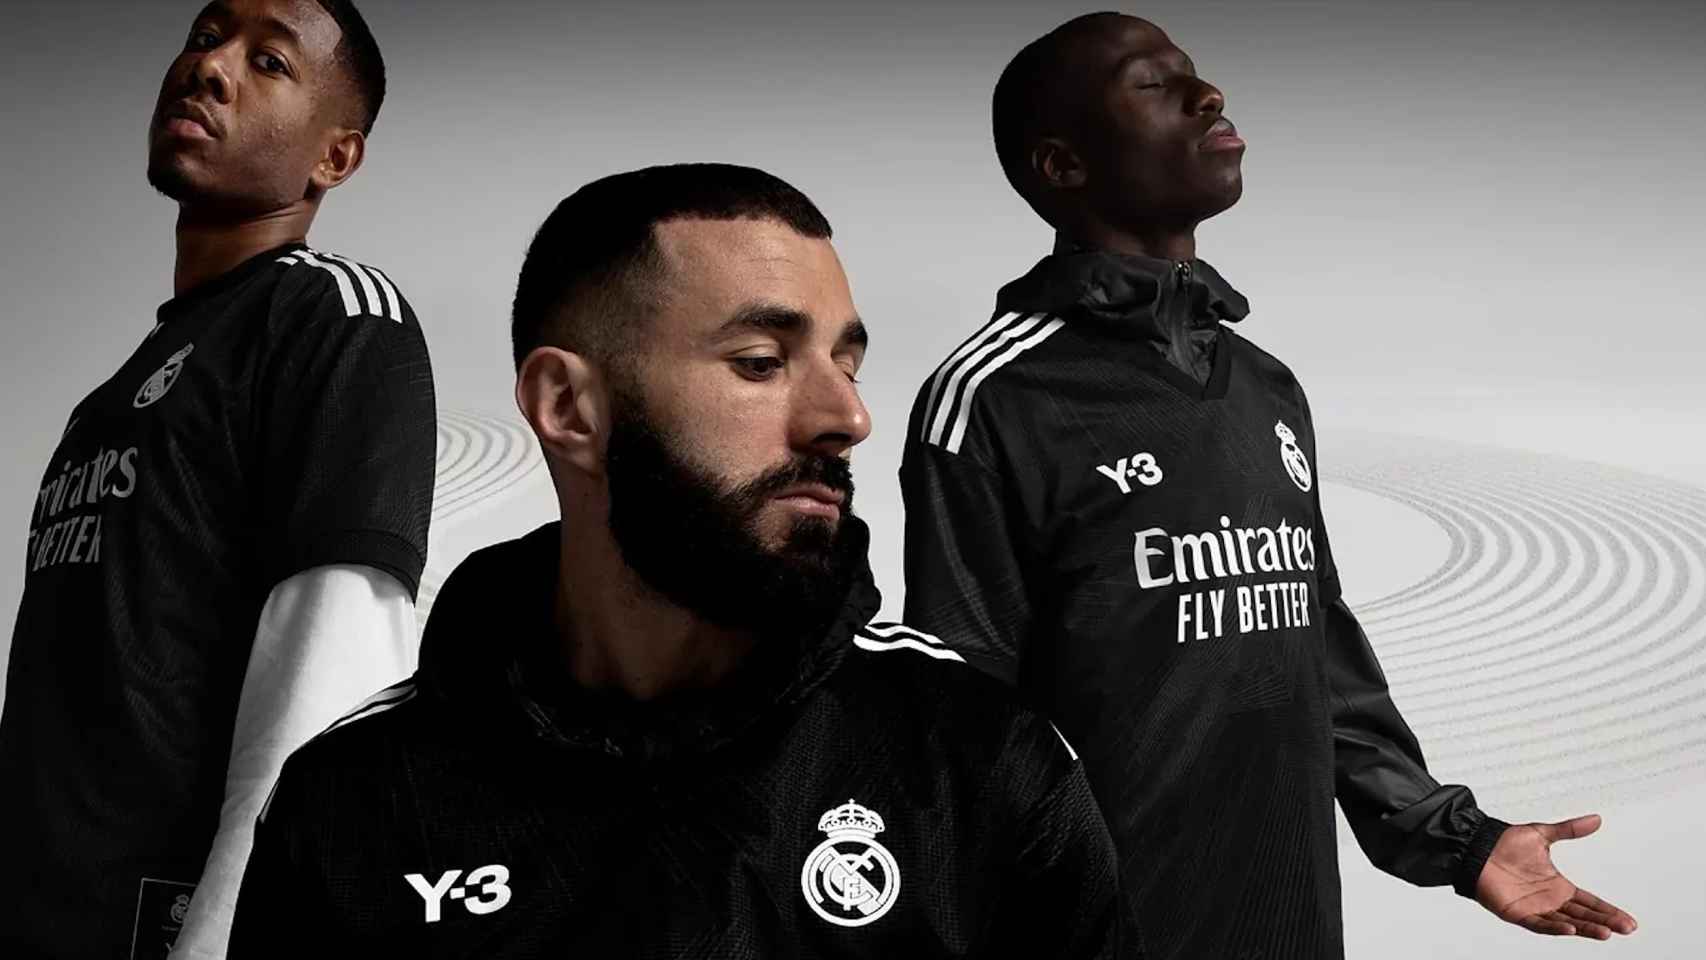 El Real Madrid presenta su nueva camiseta para El Clásico: será negra